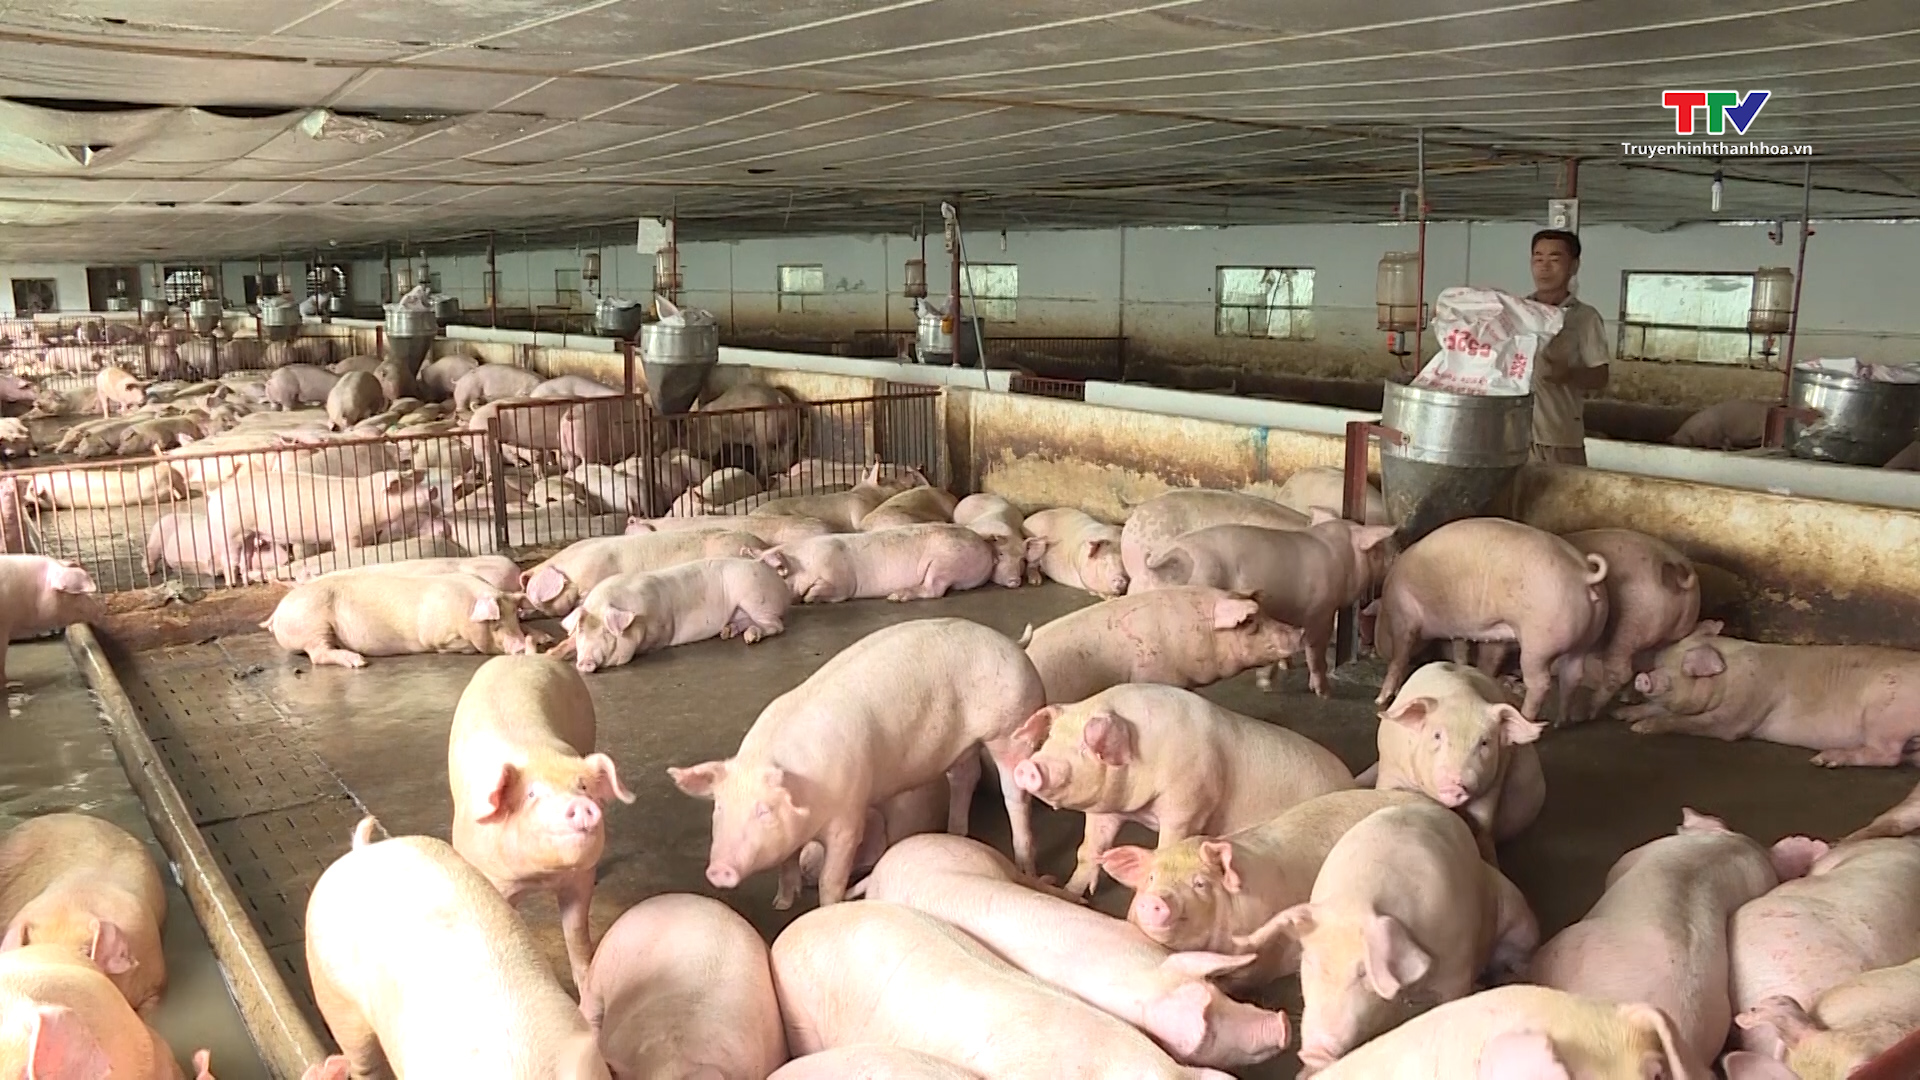 Chăn nuôi lợn gặp khó do giá bán thấp, dịch bệnh quay trở lại - Ảnh 2.